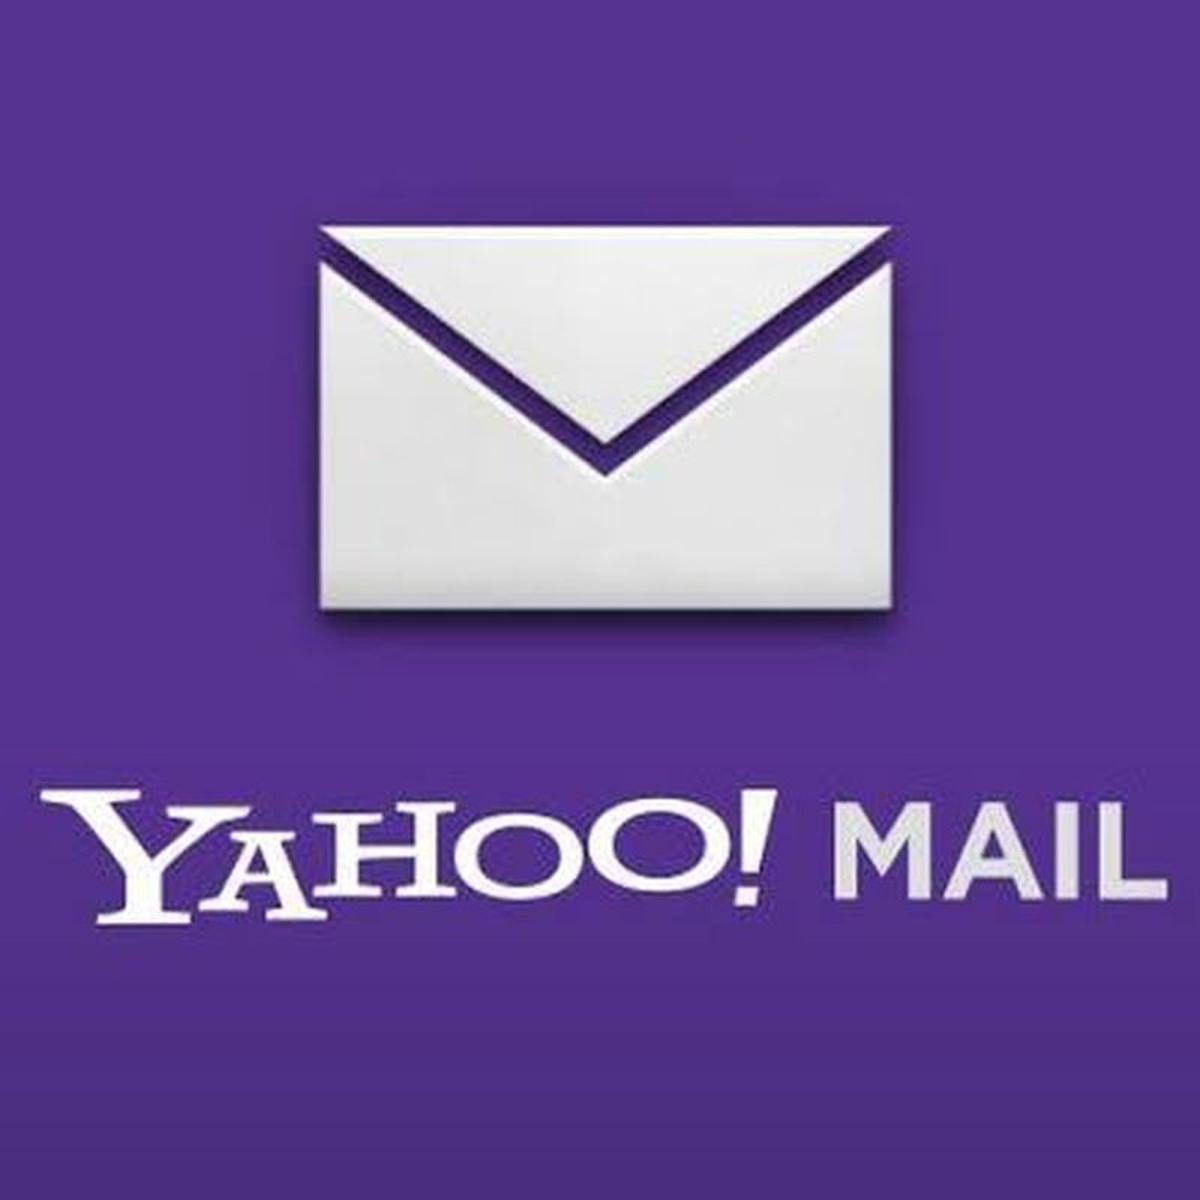 YAHOO MAIL Iniciar Sesión: *cómo entrar a mi correo electrónico de Yahoo? 